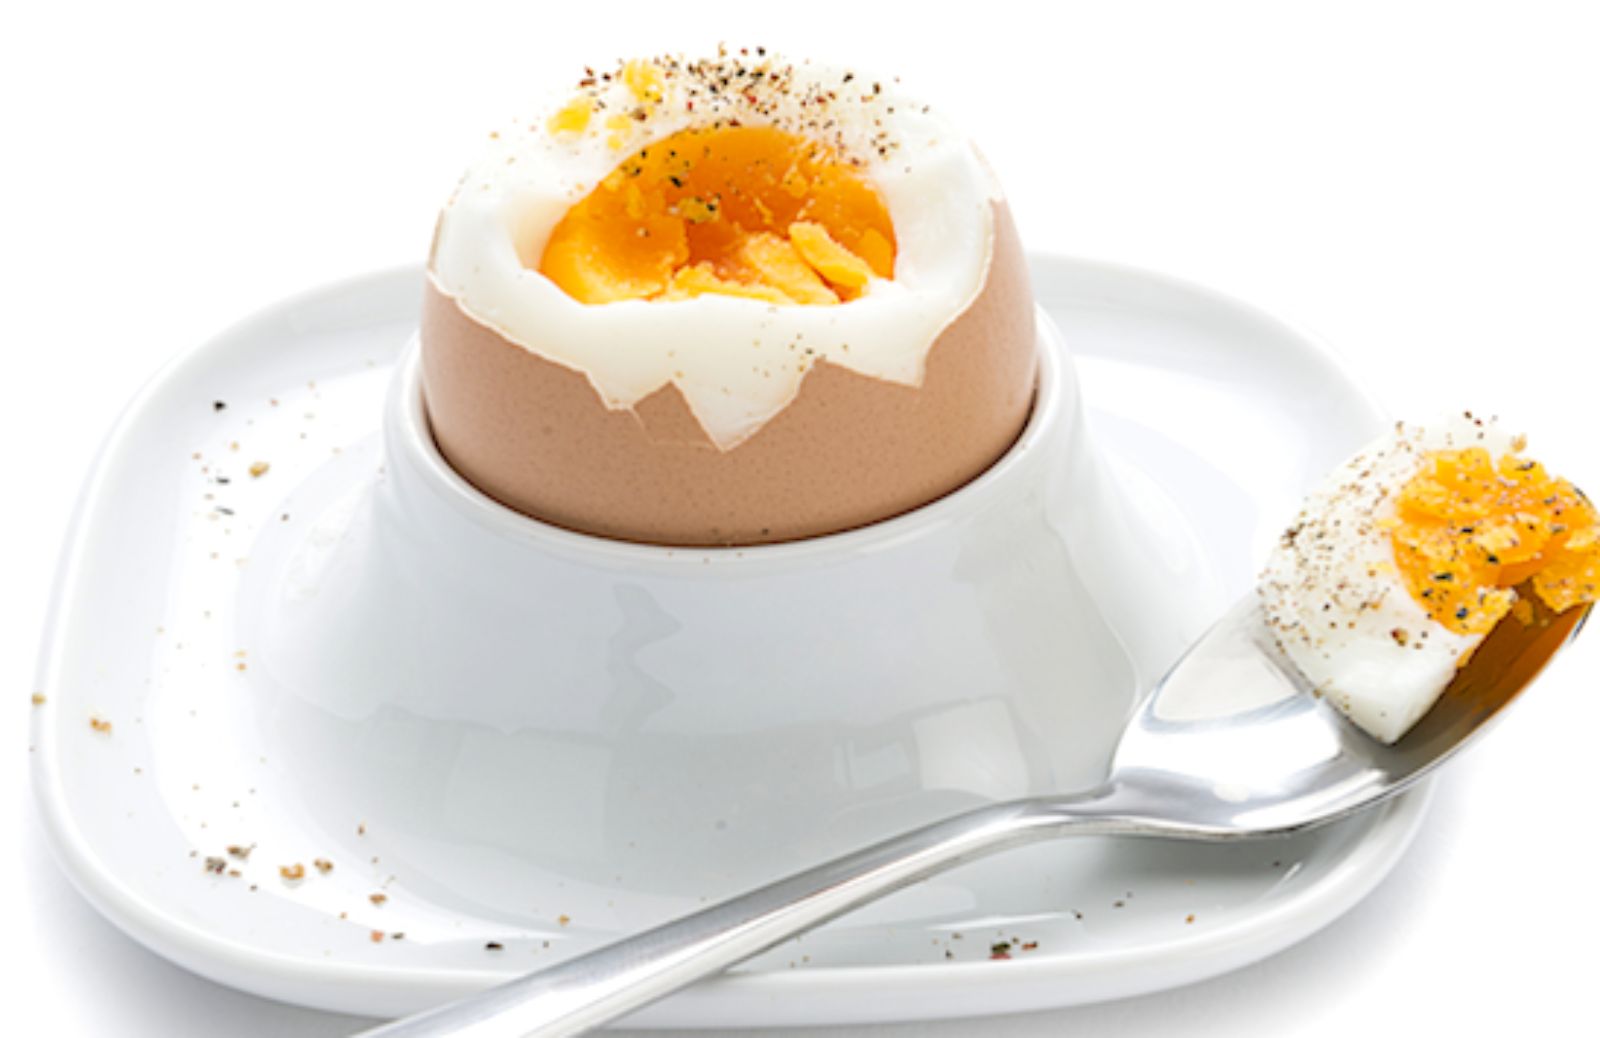 Come si prepara un uovo sodo